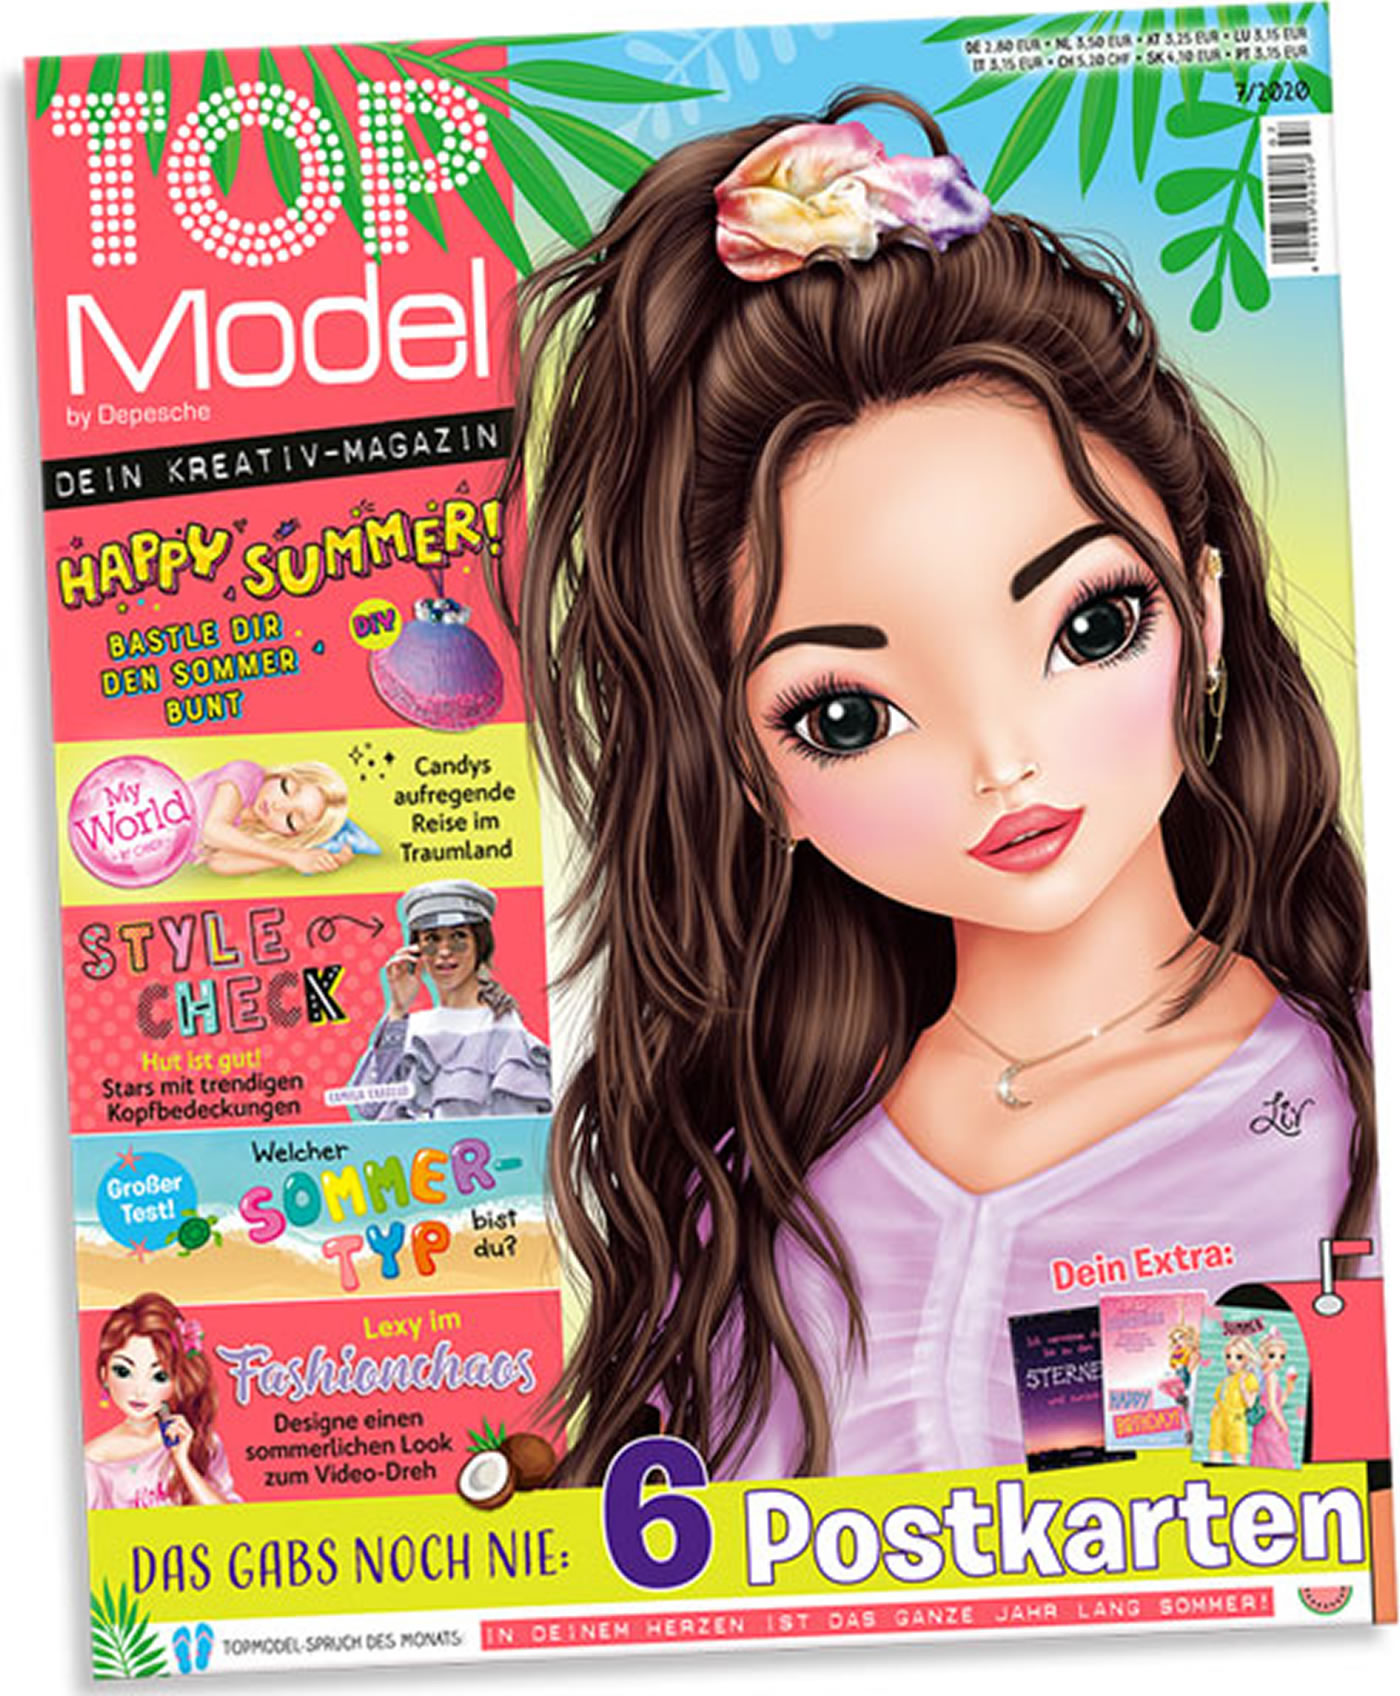 Top magazine. Топ-модель журнал для девочек. Журнал топ модели. Top model журнал для девочек. Топ-модель детский журнал.